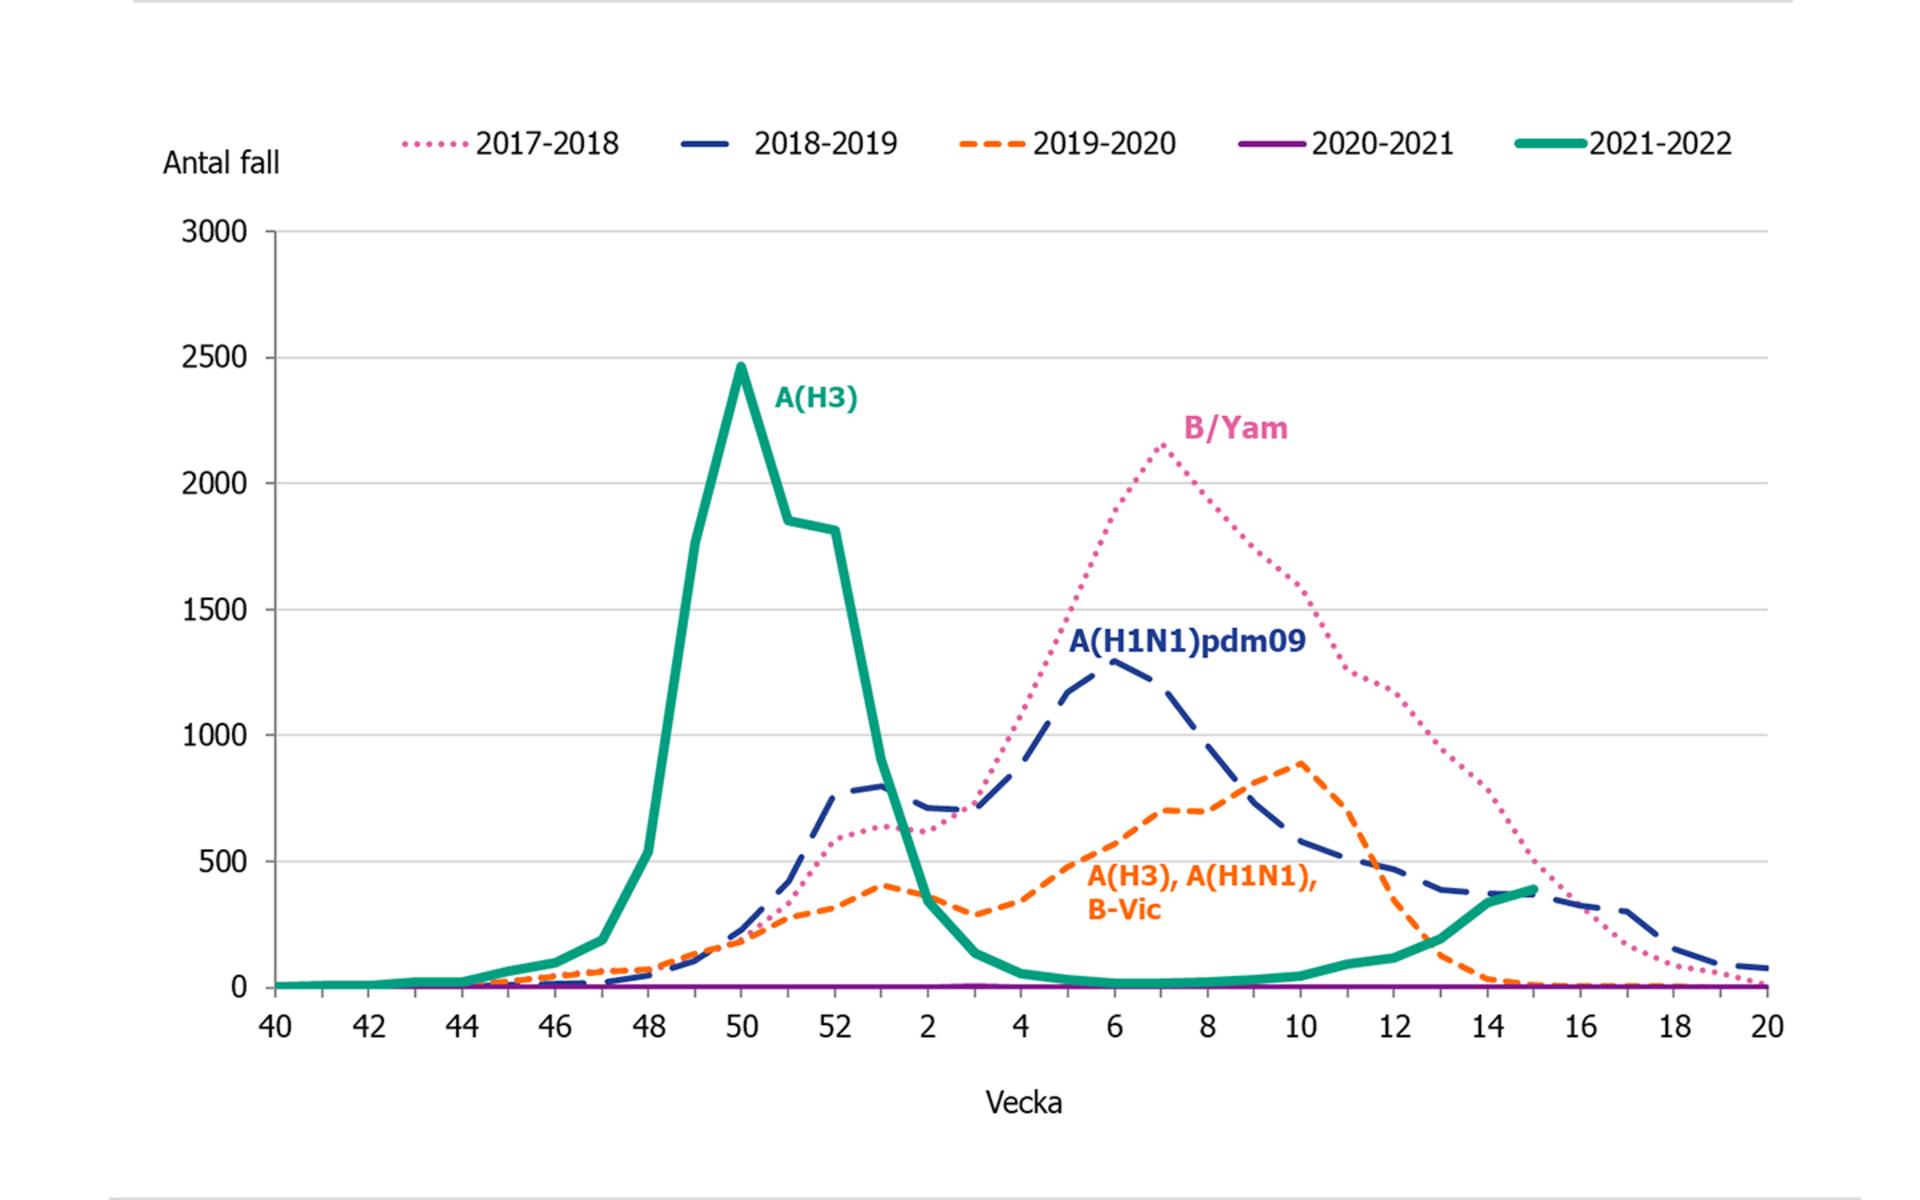 Samtidigt är säsongsinfluensan på väg mot en ny topp. Den gröna linjen visar 2021/2022. De senaste åren har förekomsten varit väldigt låg på grund av pandemin.